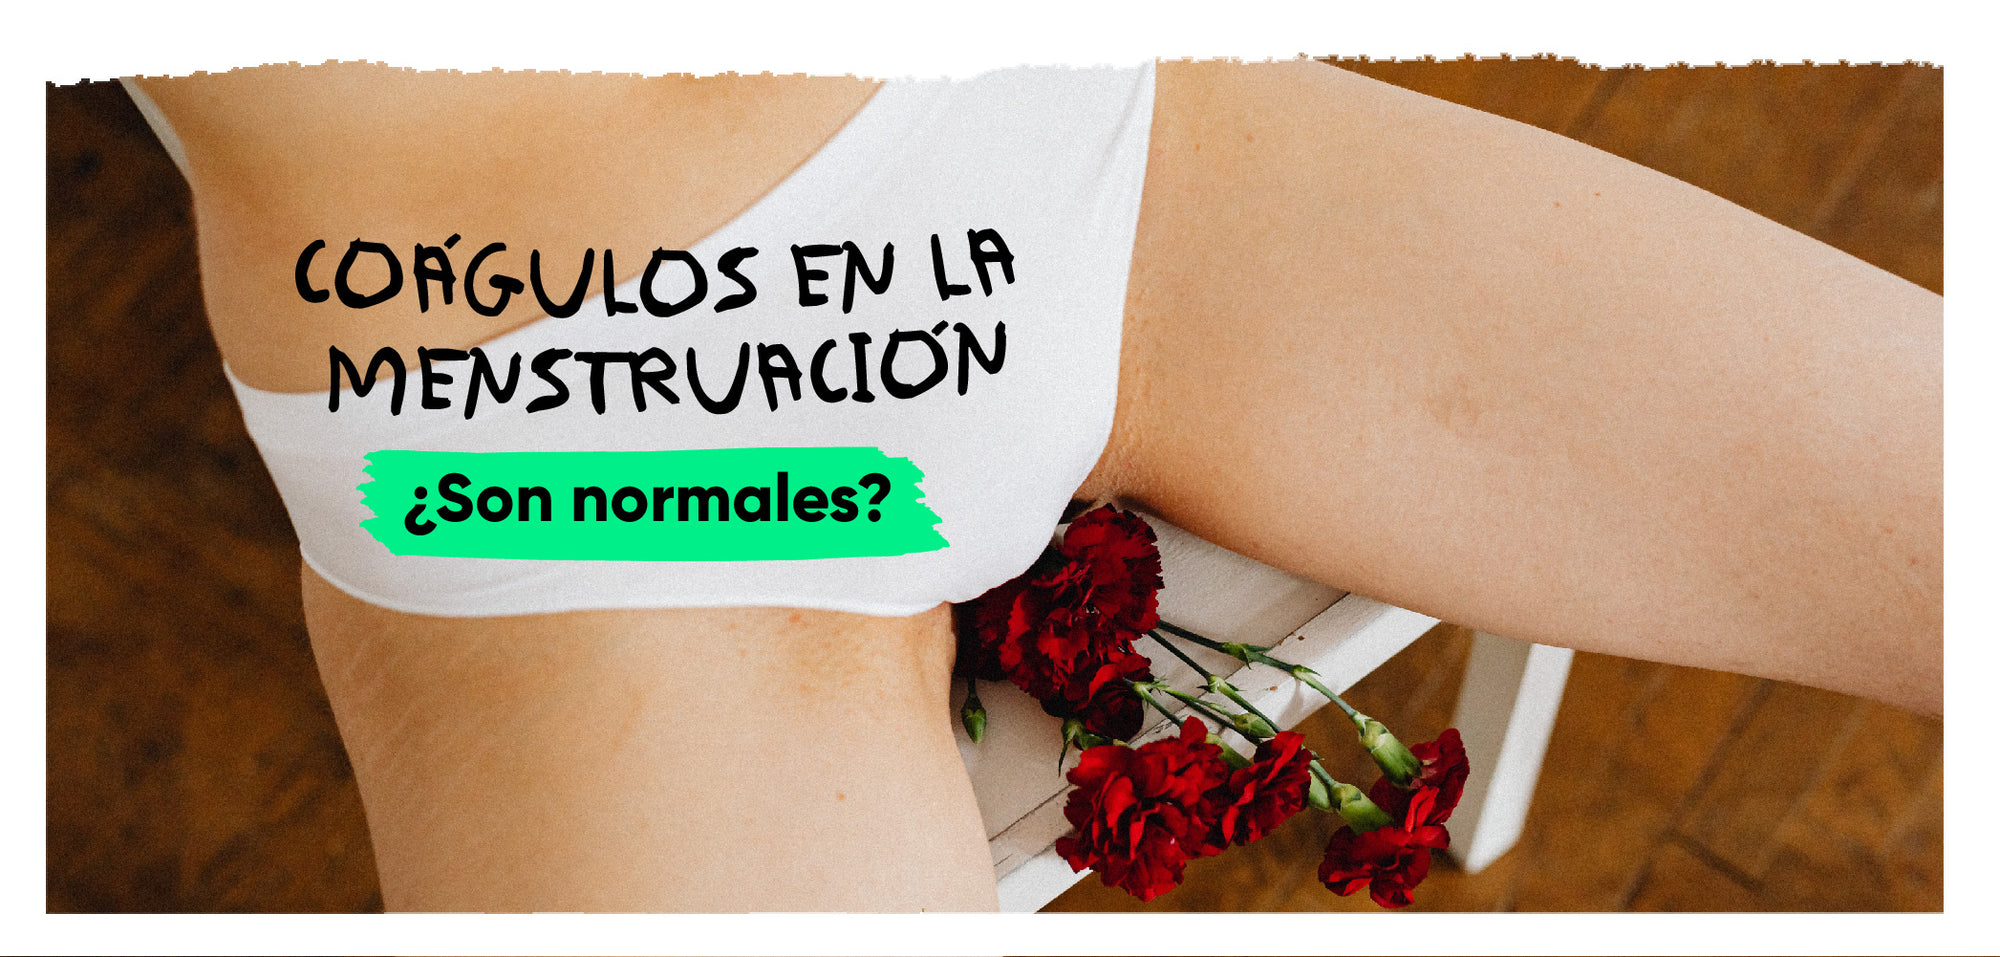 Coágulos en la menstruación: ¿Son normales?